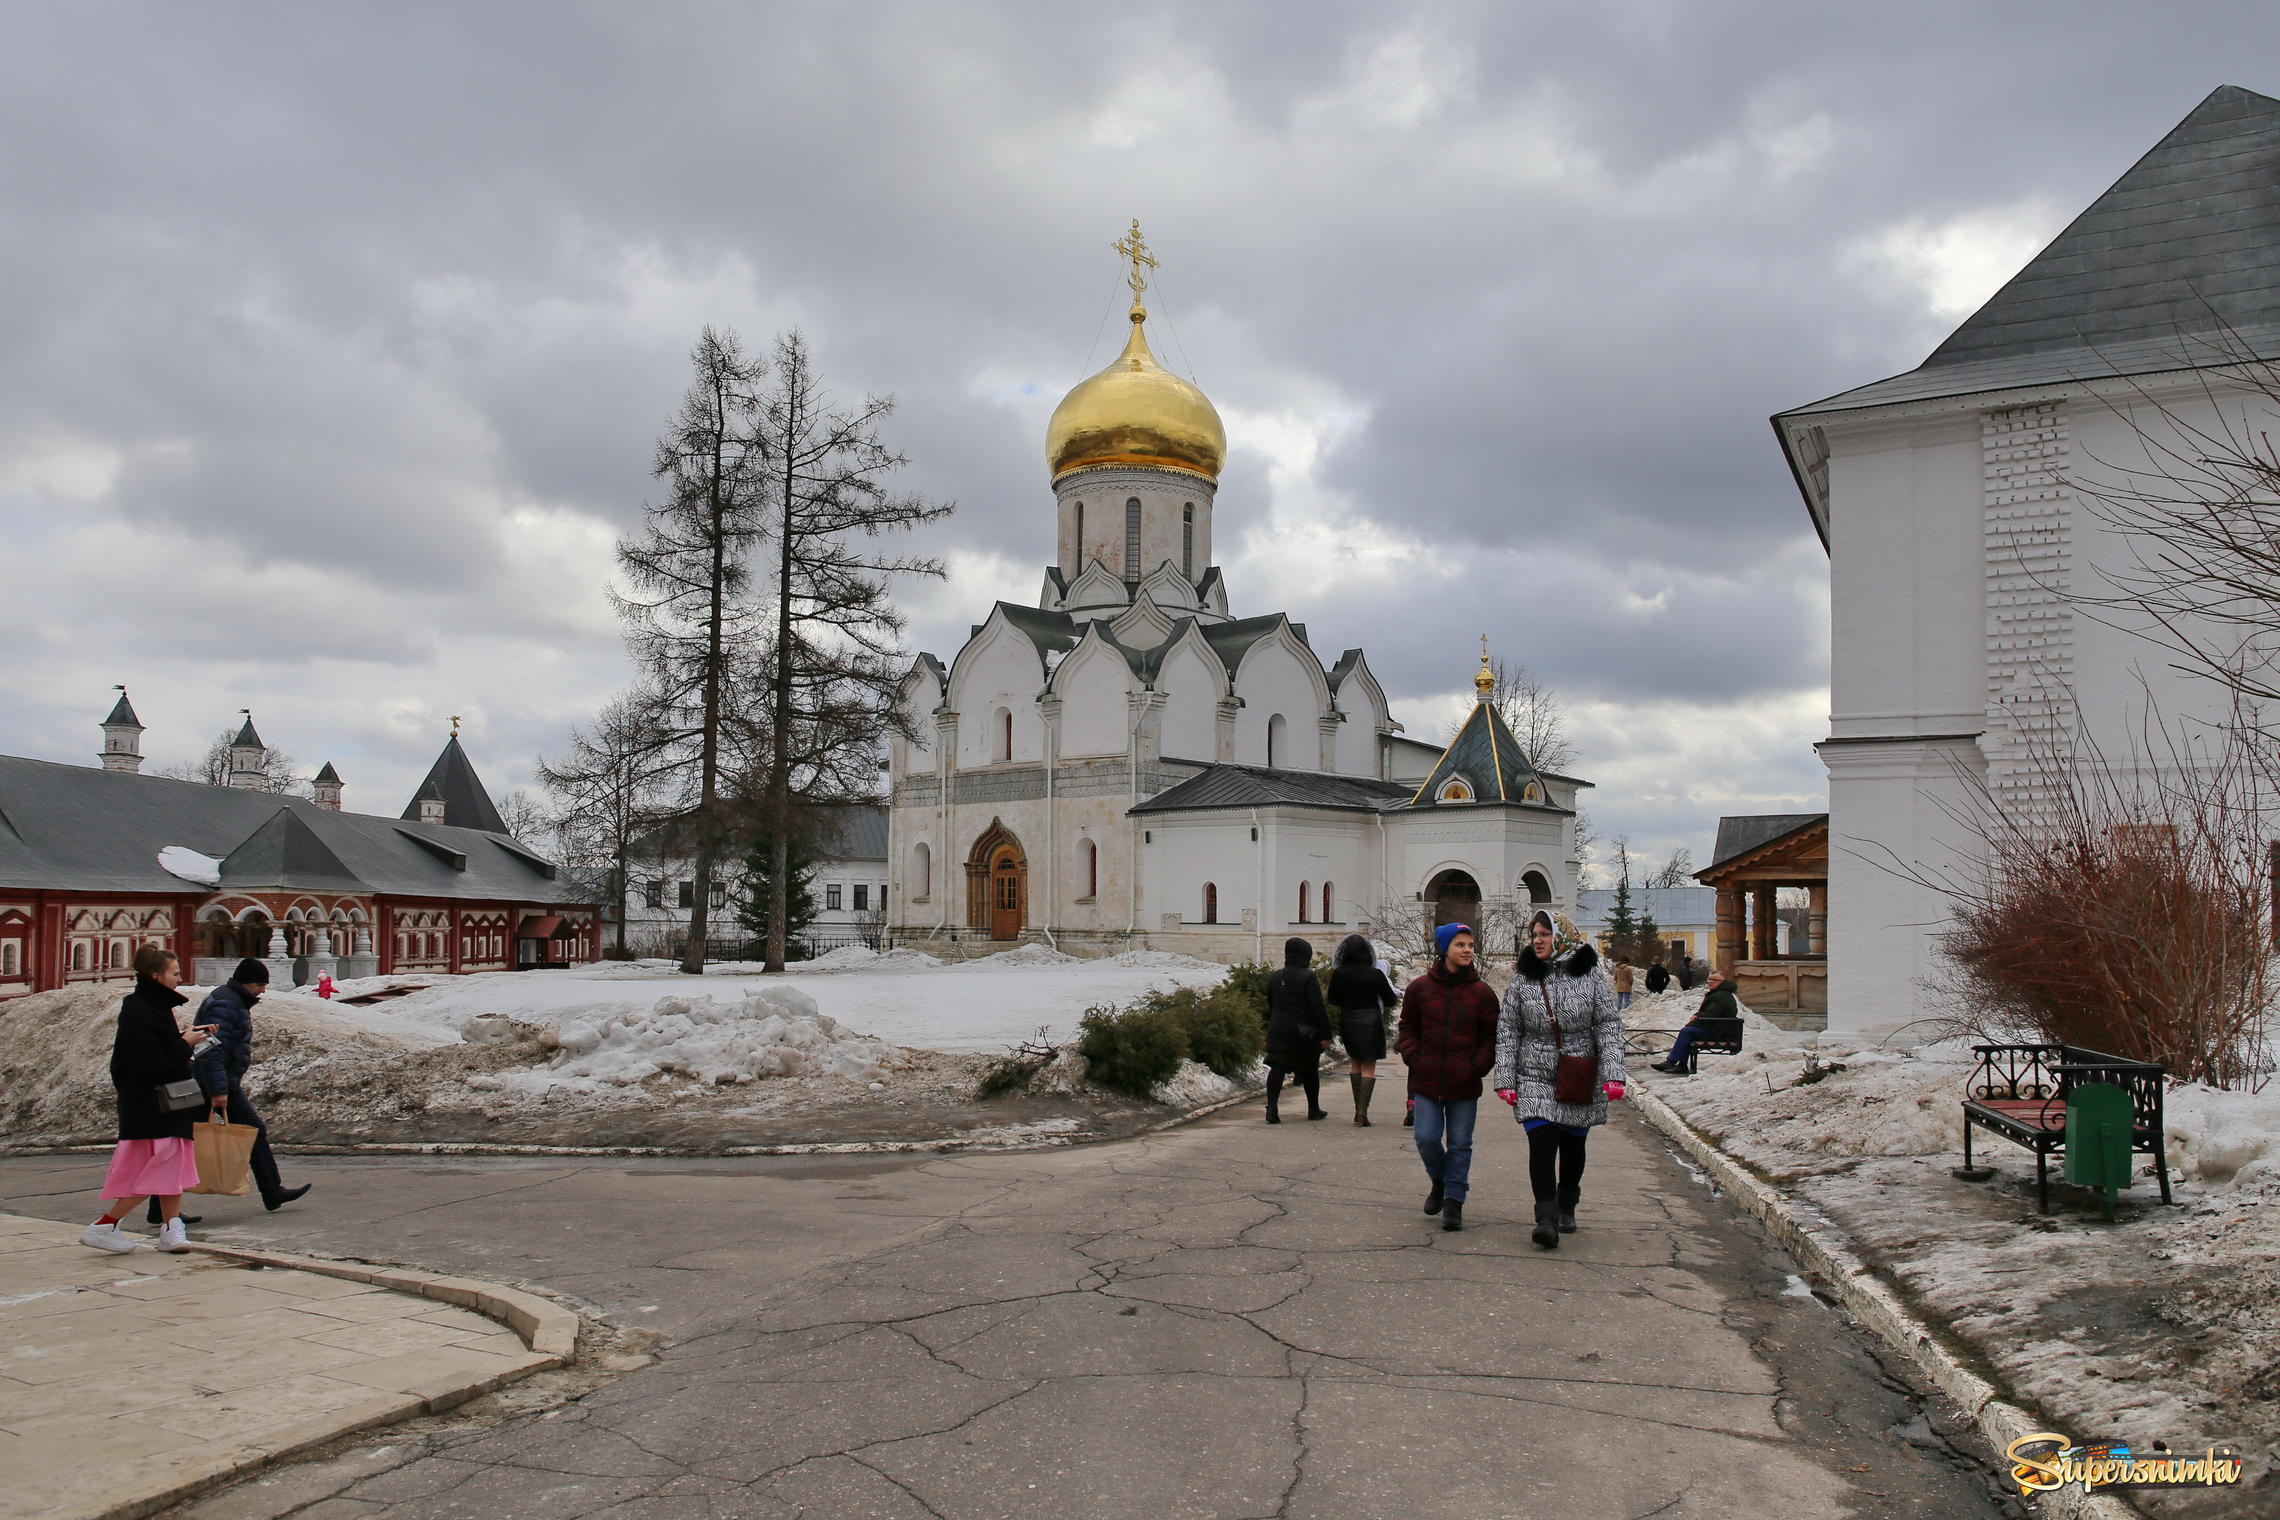  Саввино- Сторожевский монастырь